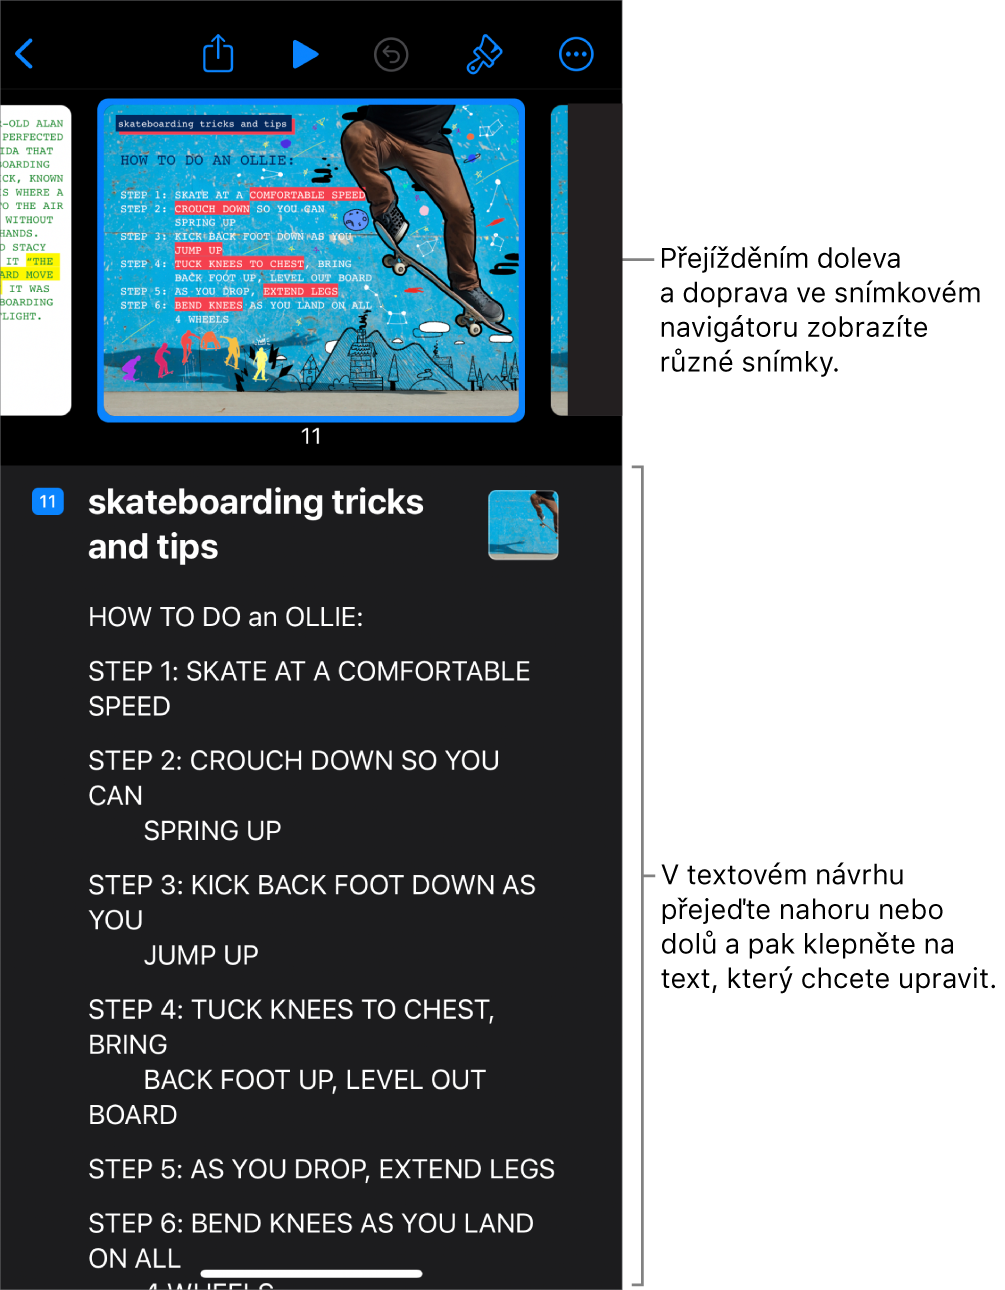 Zobrazení osnovy s vodorovným navigátorem snímků nahoře na obrazovce a textovou osnovou prezentace dole